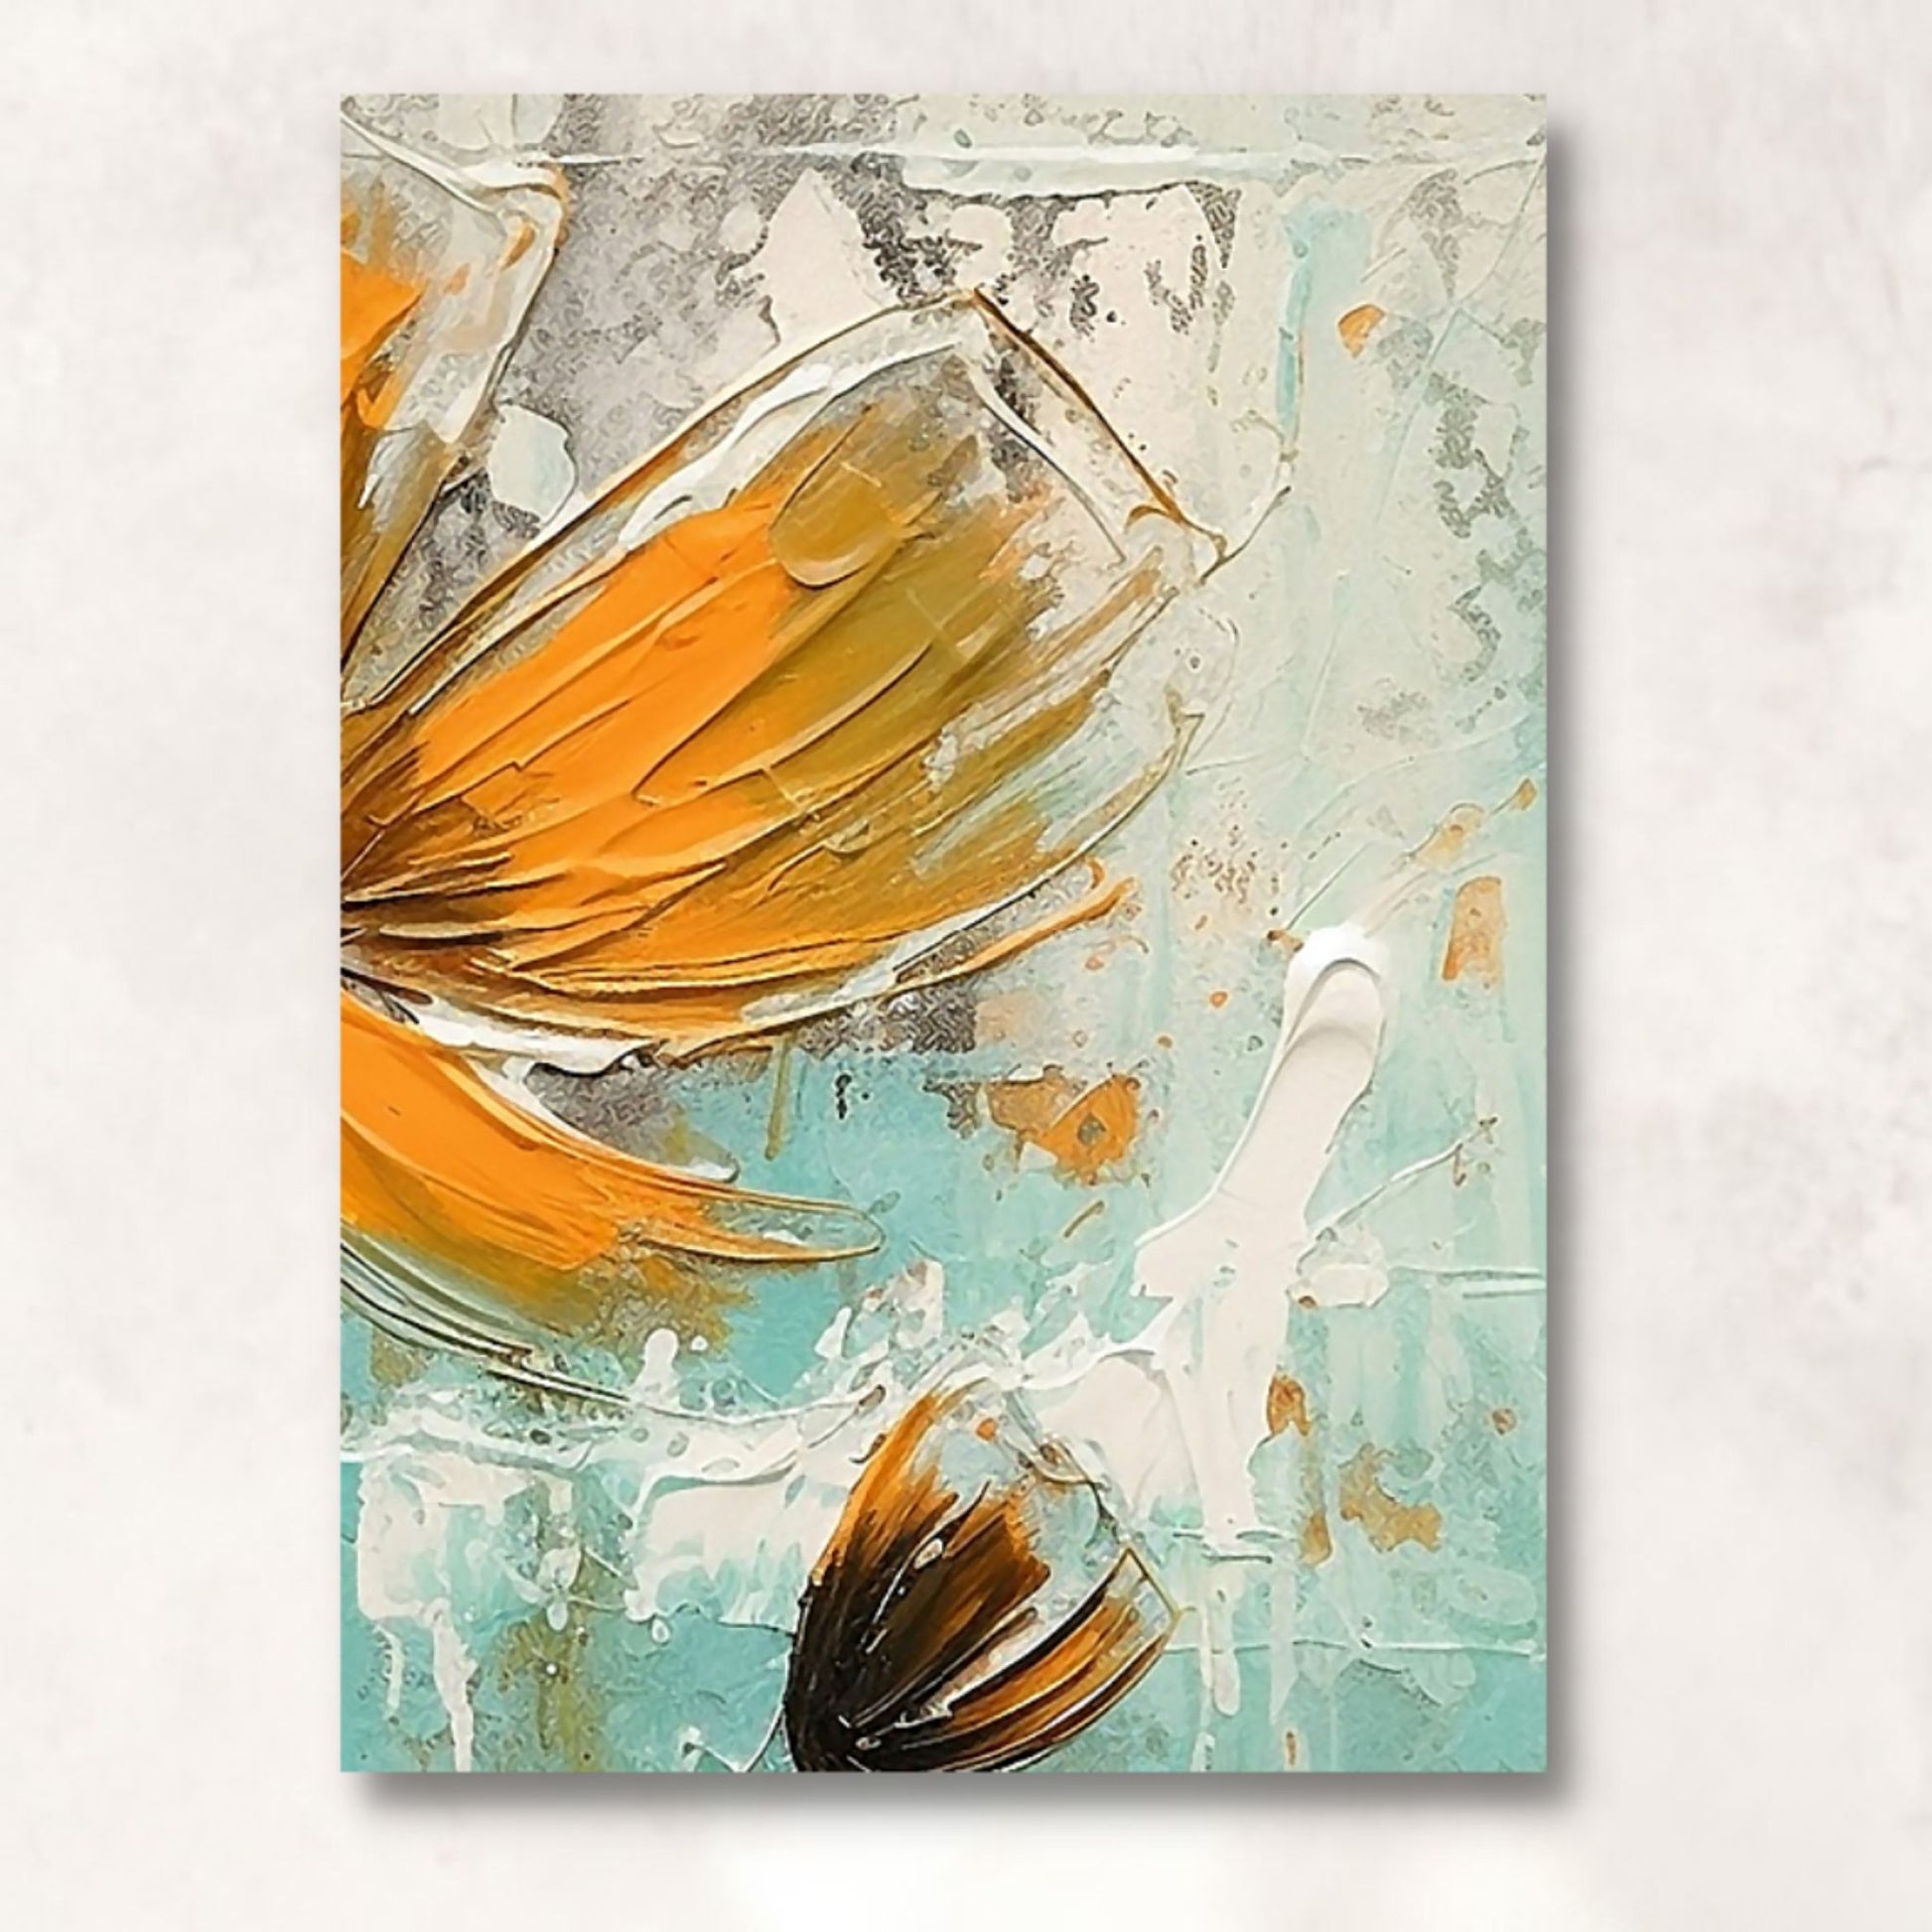 Motiv 2 av 3 stk. grafiske print på lerret. Motivet består av oransje blomster som danser på en beroligende bakgrunn av brunt,  beige og turkis. Illustrasjon av lerret på vegg.